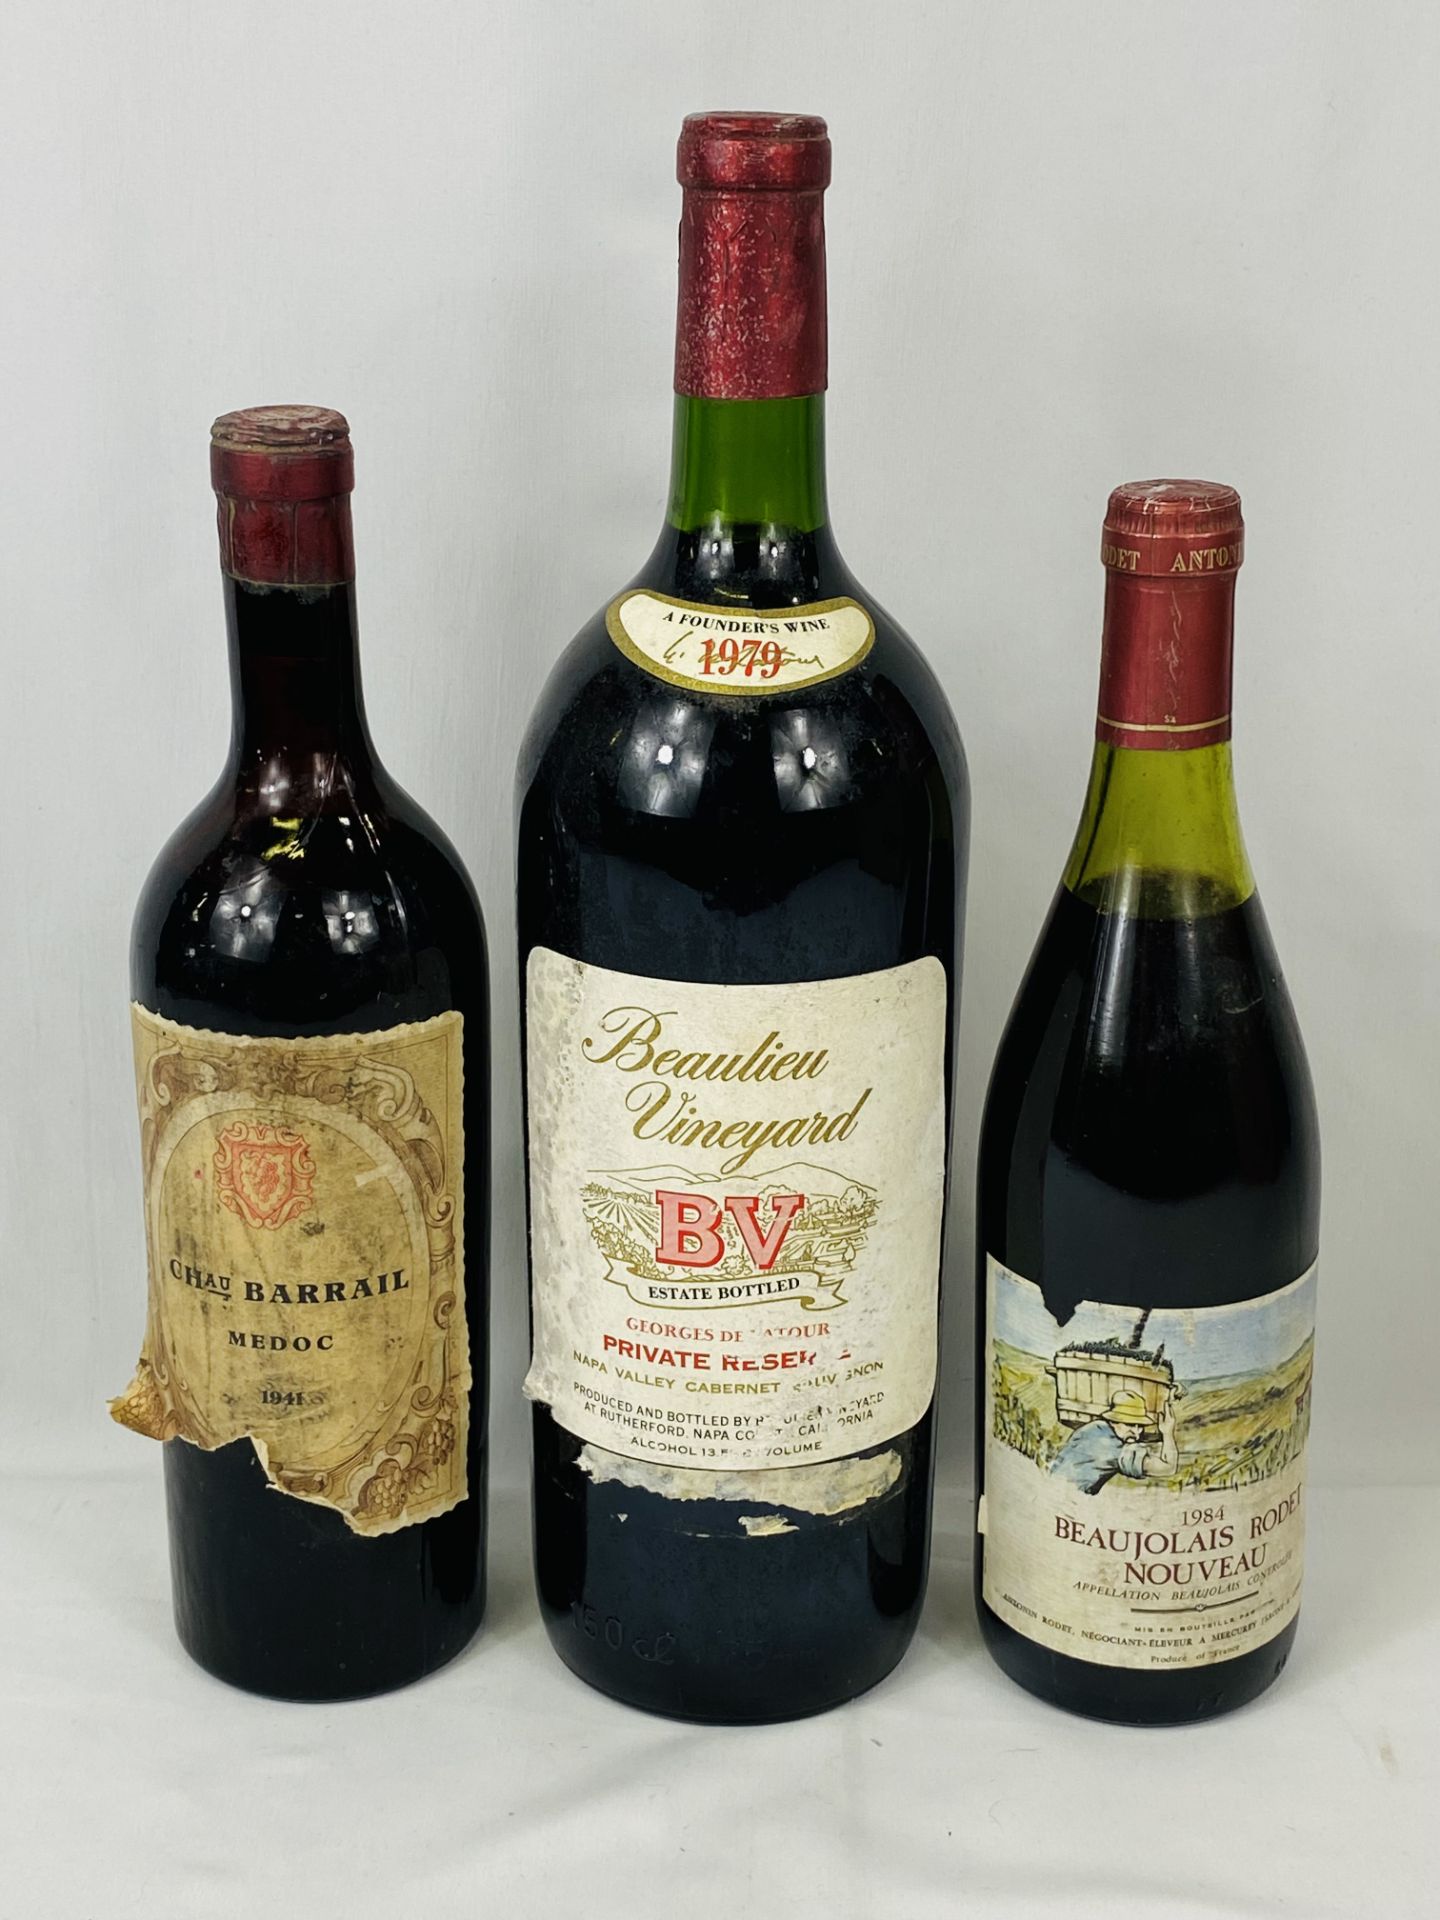 Magnum Beaulieu Vineyard Georges de Latour; Chateau Barrail 1941; Beaujolais Rodet 1984